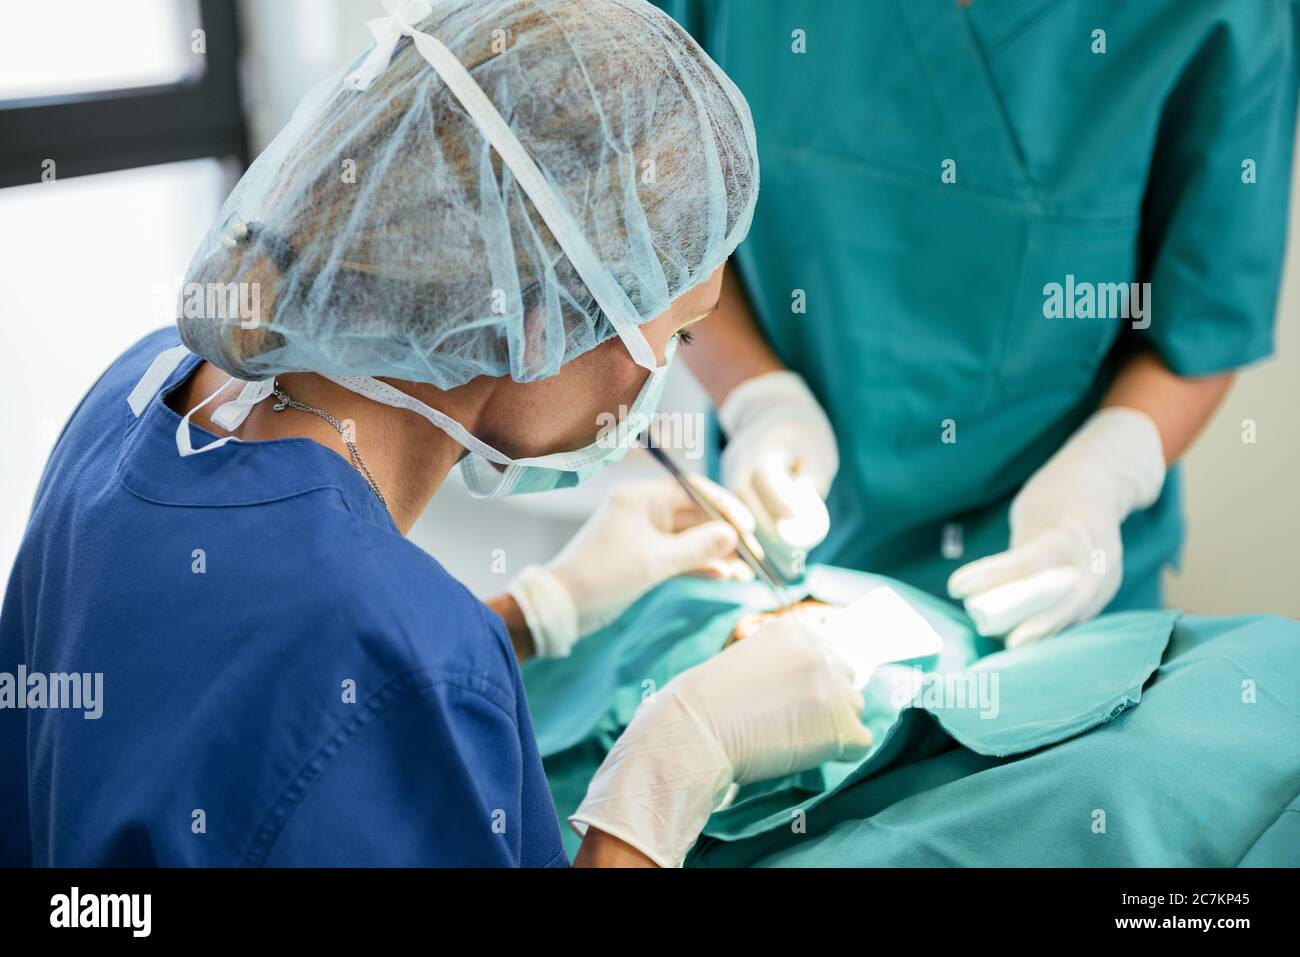 Operationsteam im Operationssaal. Professioneller Arzt, der eine Operation durchführt Stockfoto